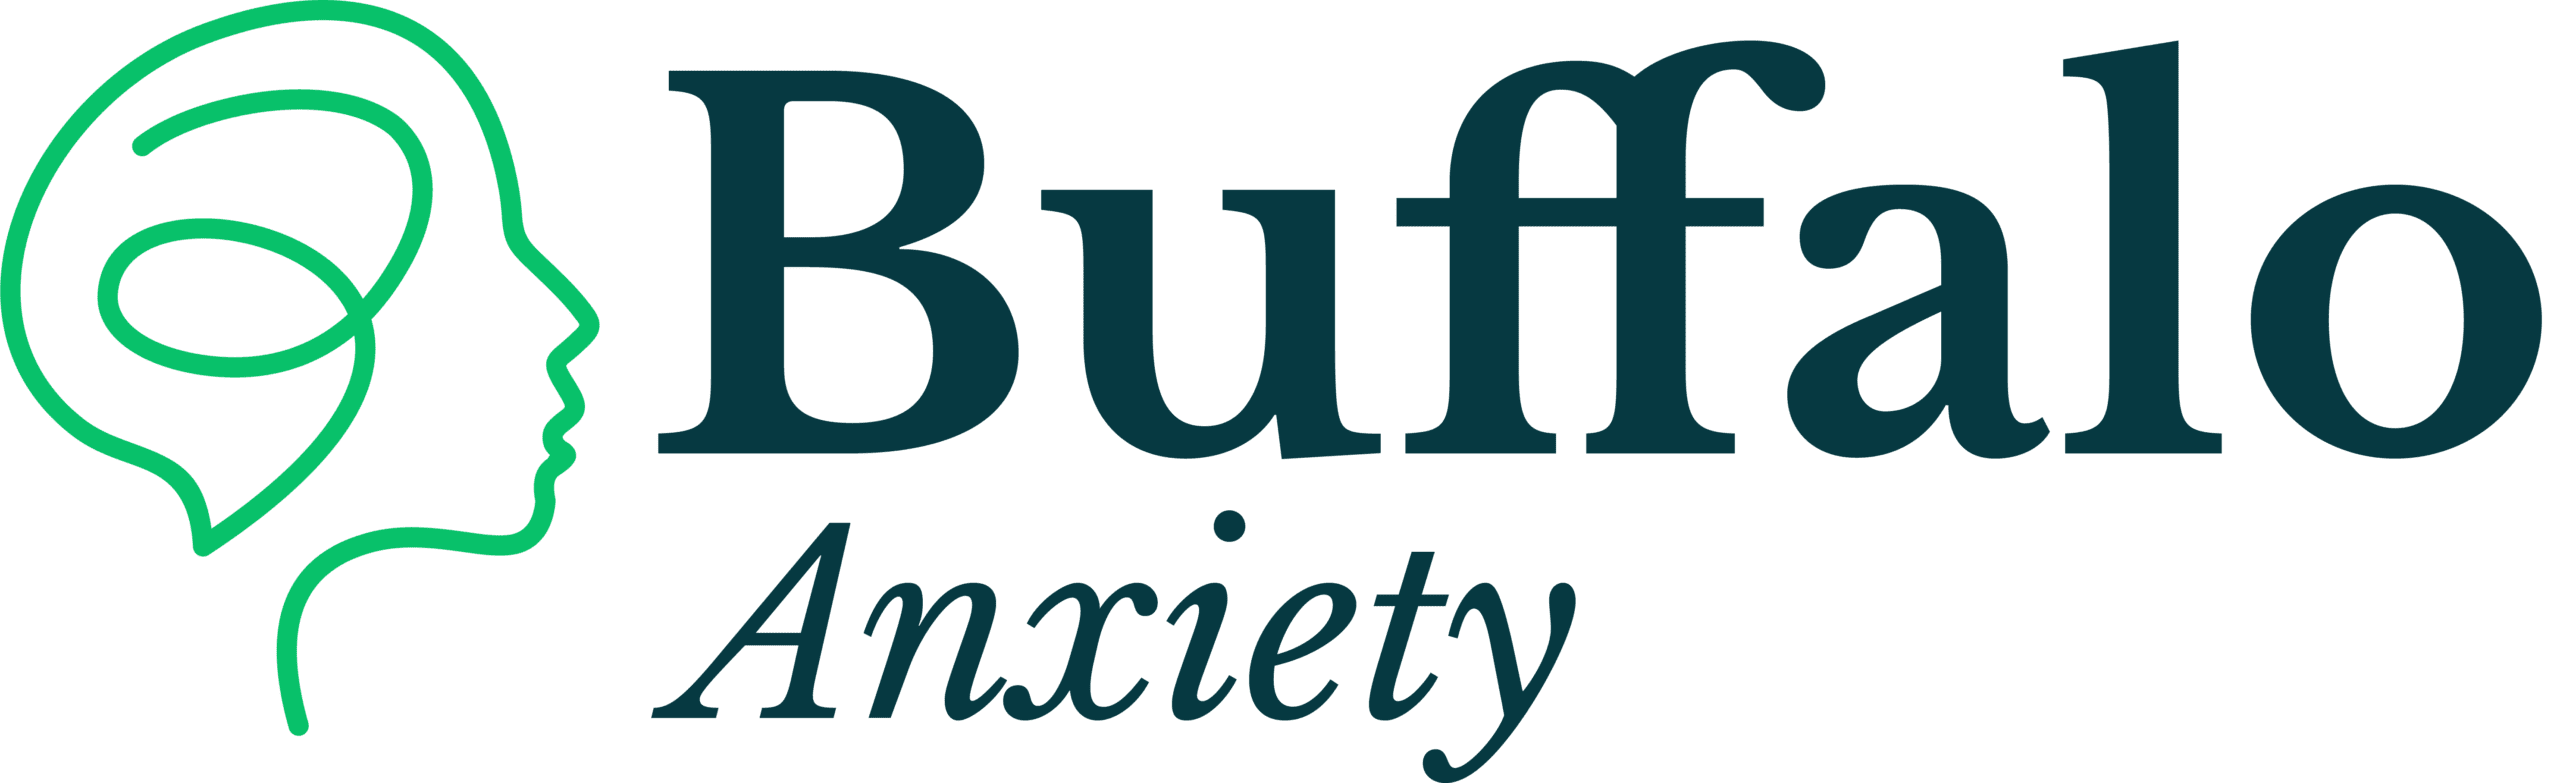 Buffalo Anxiety